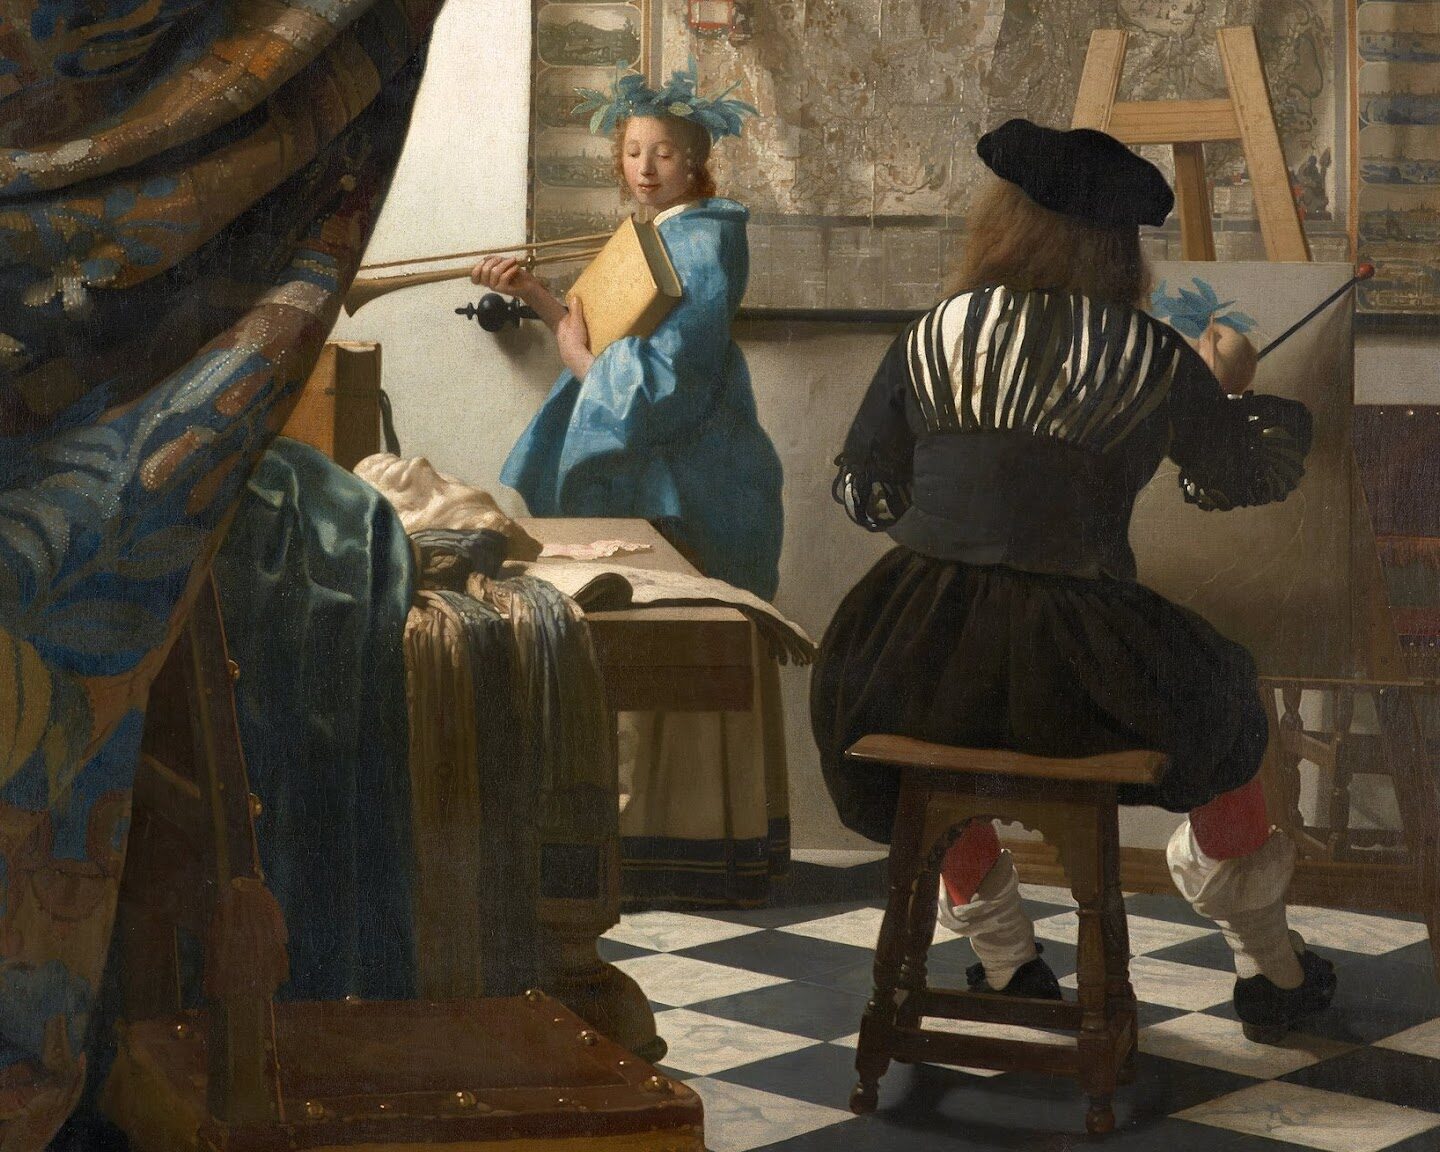 Obras destacadas de Johannes Vermeer, el maestro del arte barroco holandés